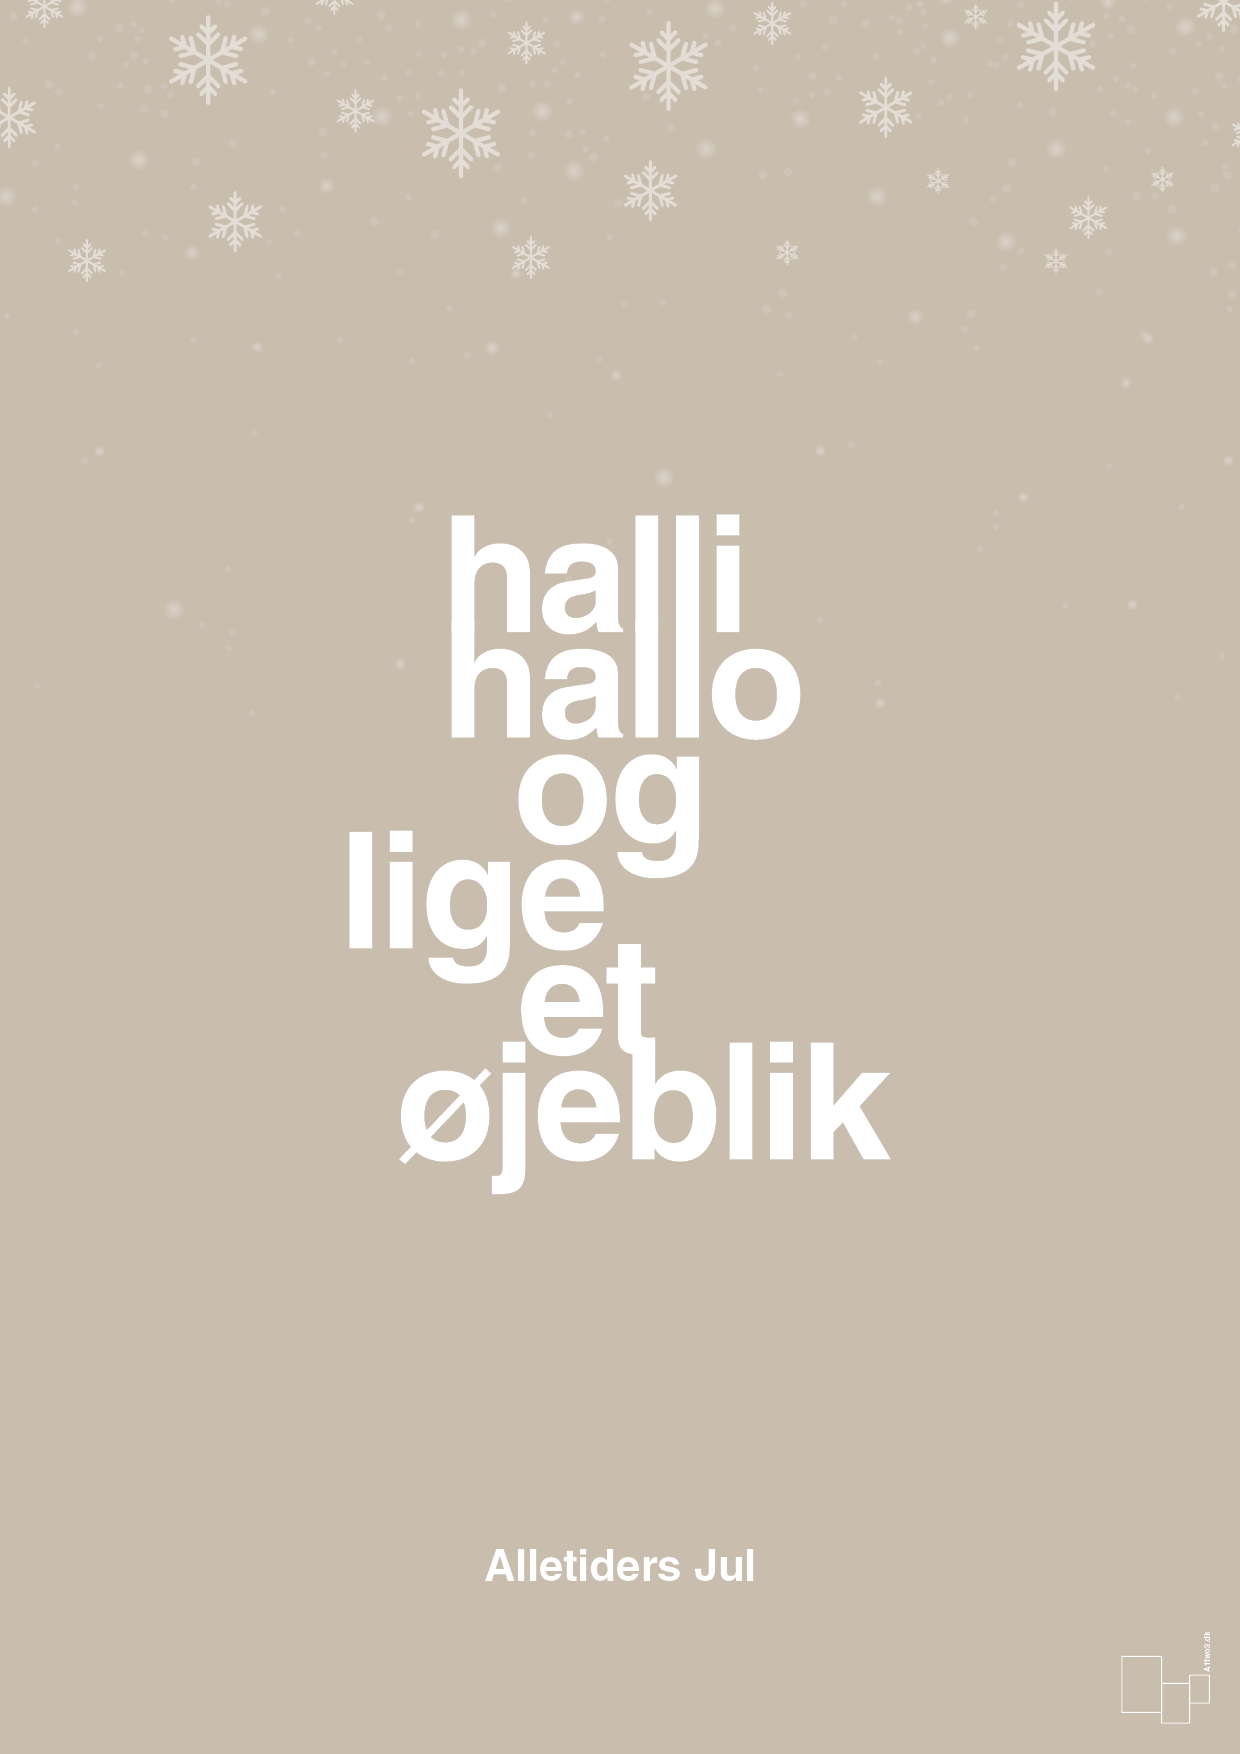 halli hallo og lige et øjeblik - Plakat med Begivenheder i Creamy Mushroom